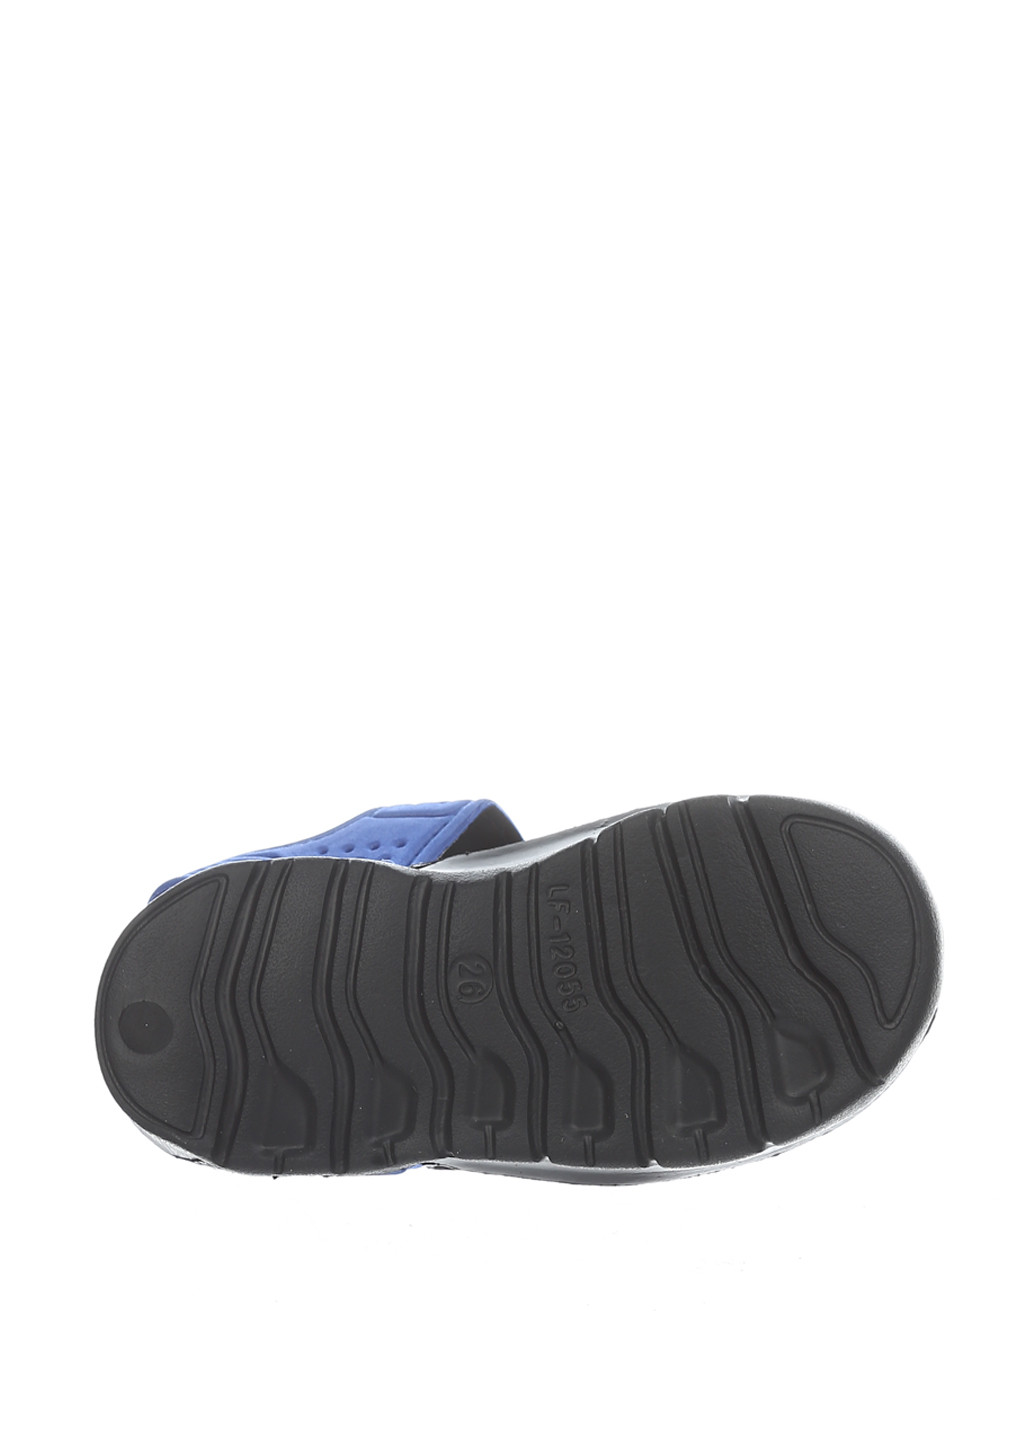 Черные пляжные сандалии Шалунишка на липучке